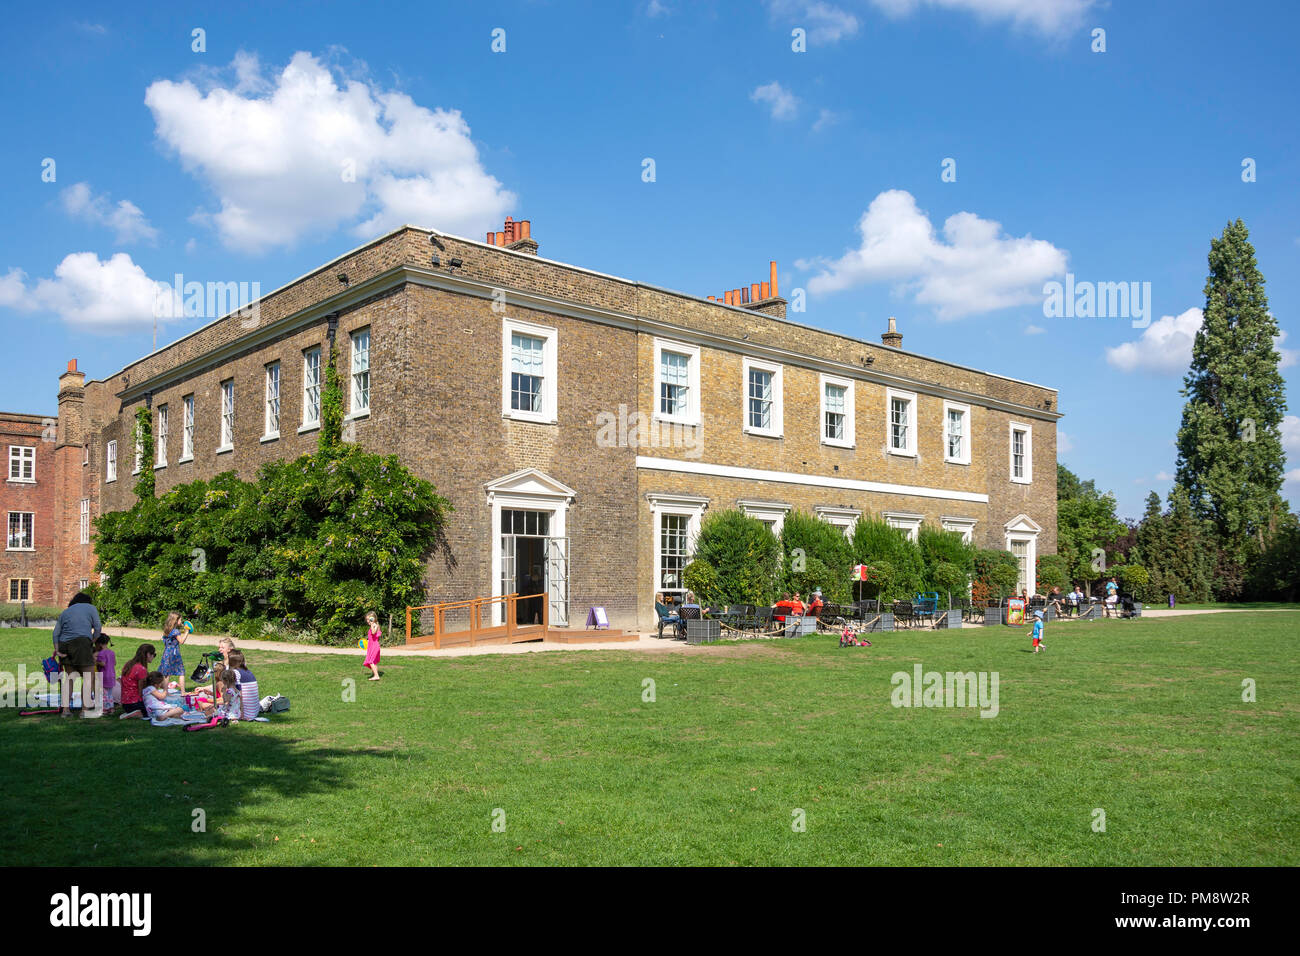 Fulham Palace, Fulham, London Borough of Hammersmith and Fulham, Greater London, England, United Kingdom Stock Photo